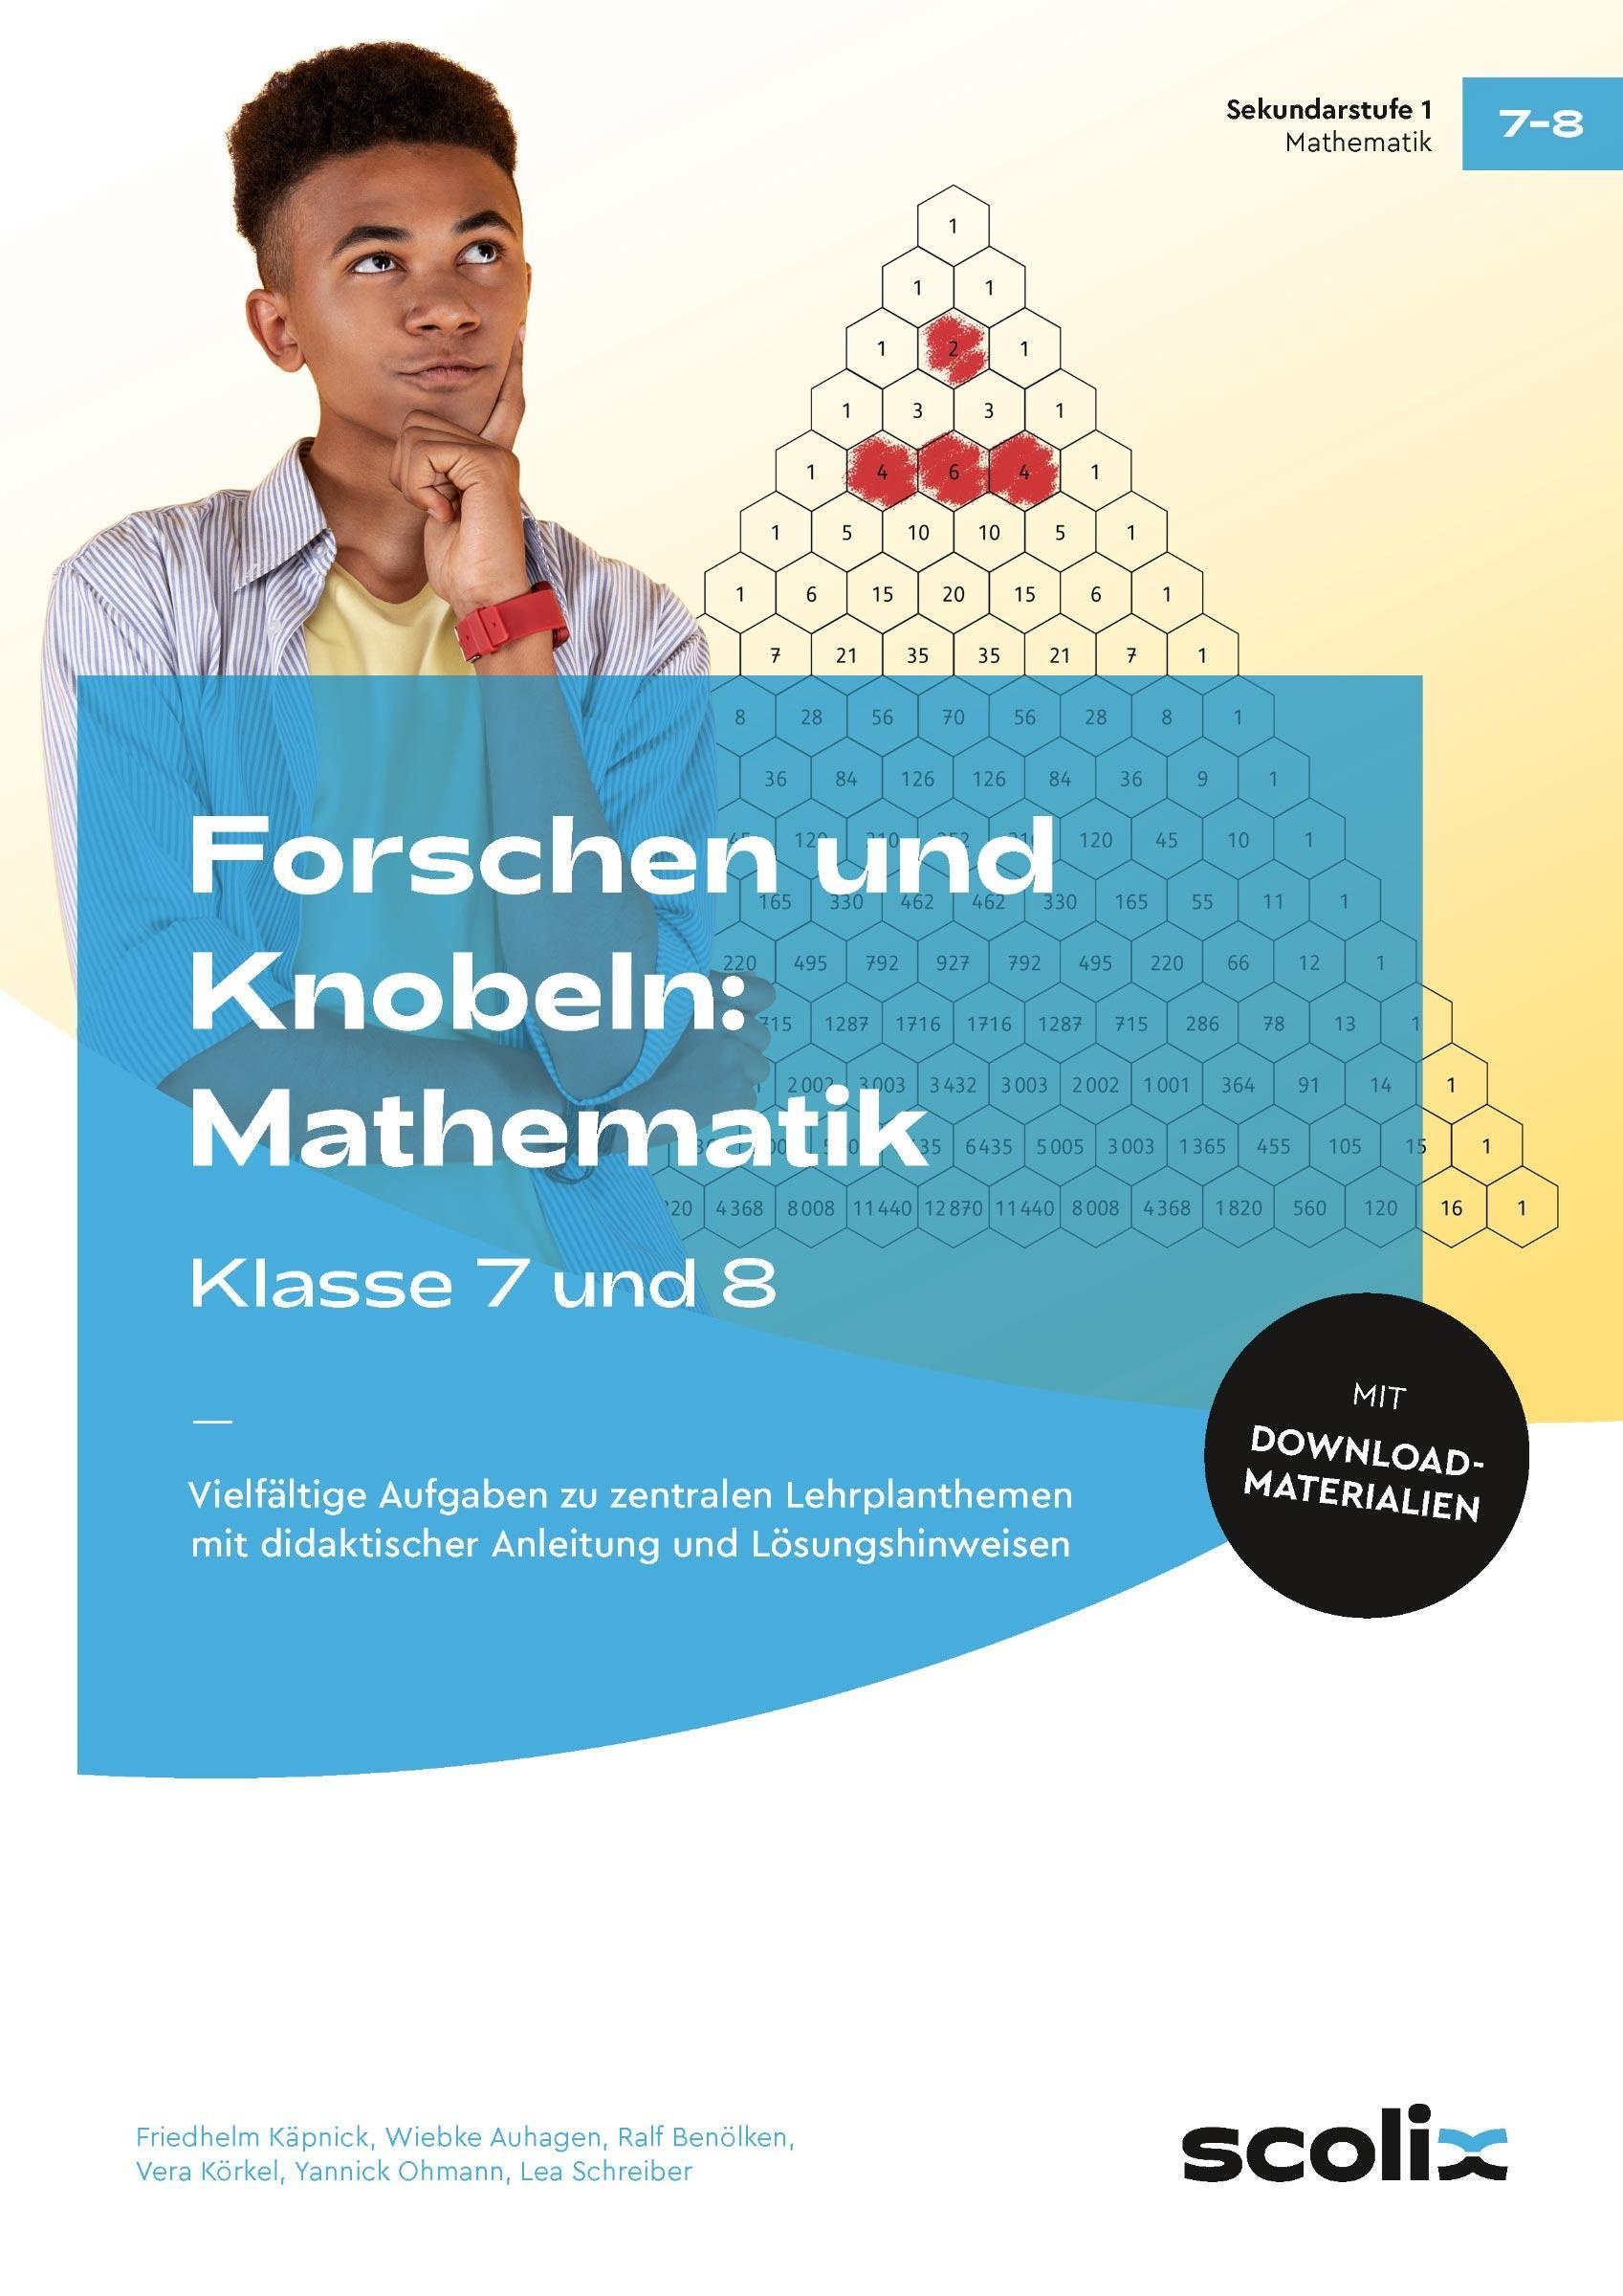 Forschen Und Knobeln: Mathematik - Klasse 7 Und 8 - Dr. Friedhelm Käpnick  Wiebke Auhagen  Geheftet